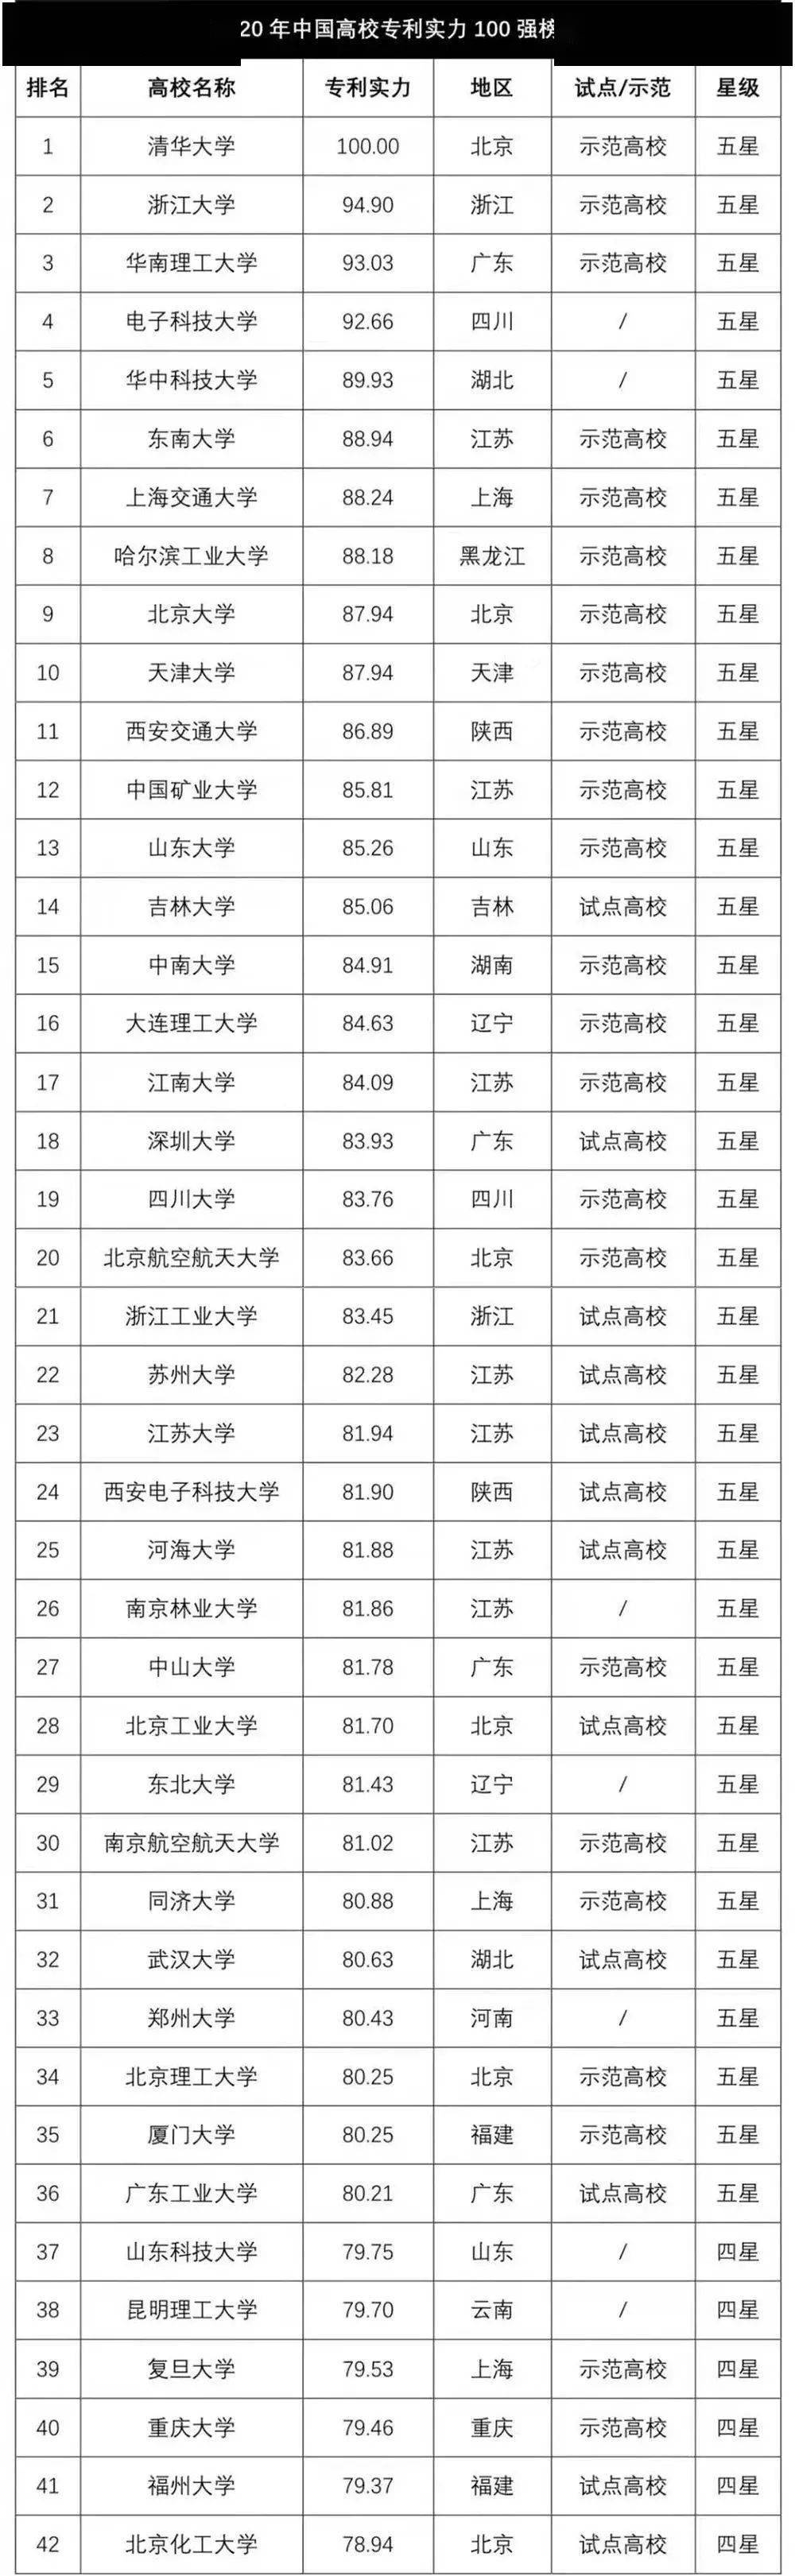 华南理工排名2020_2020上海高校排名,复旦大学力压交大,华南理工稳居21